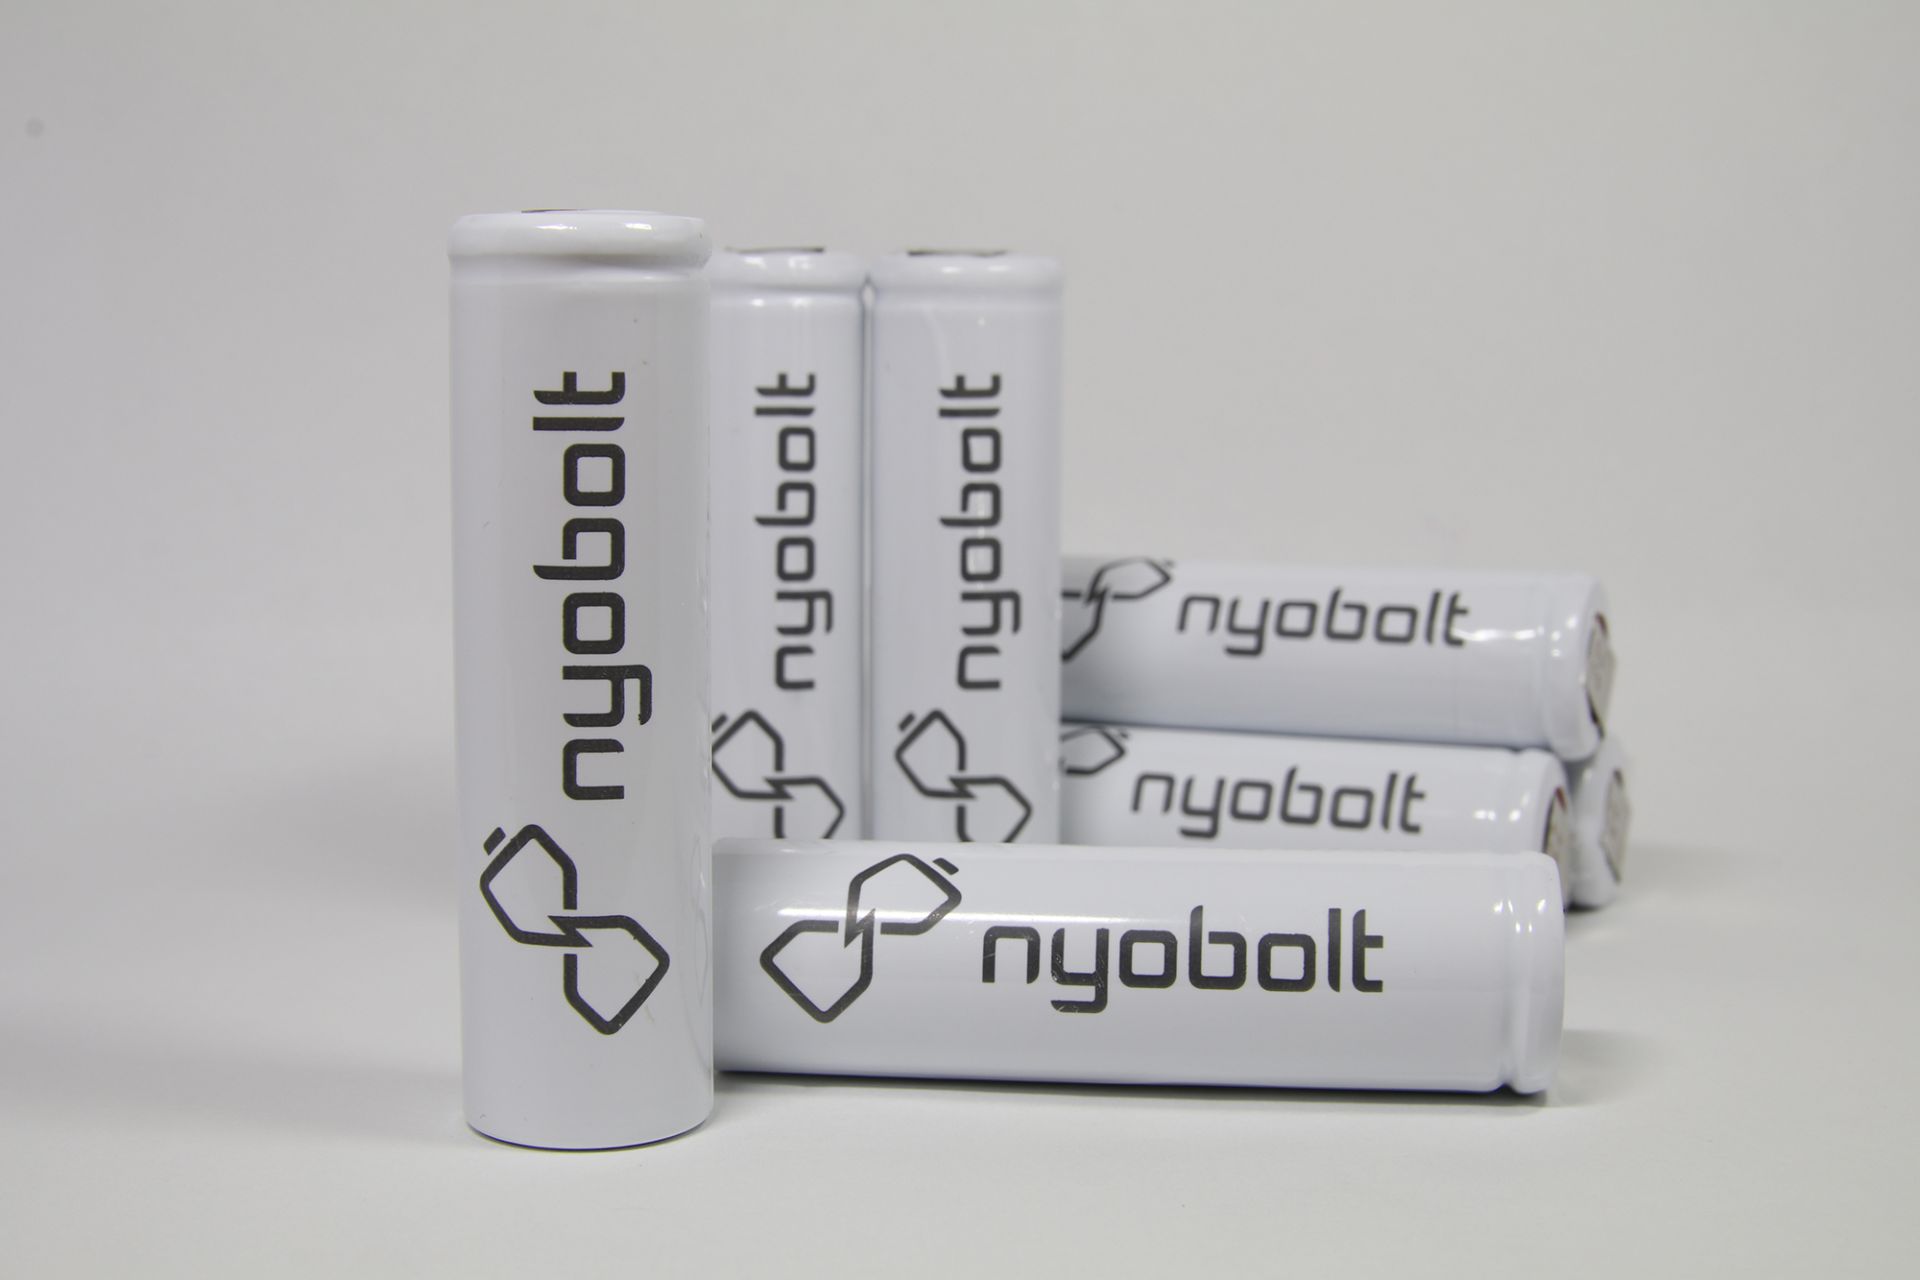 Nyobolt đã được chọn vào vòng chung kết nhờ công nghệ độc đáo trong pin Vonfram Li-ion